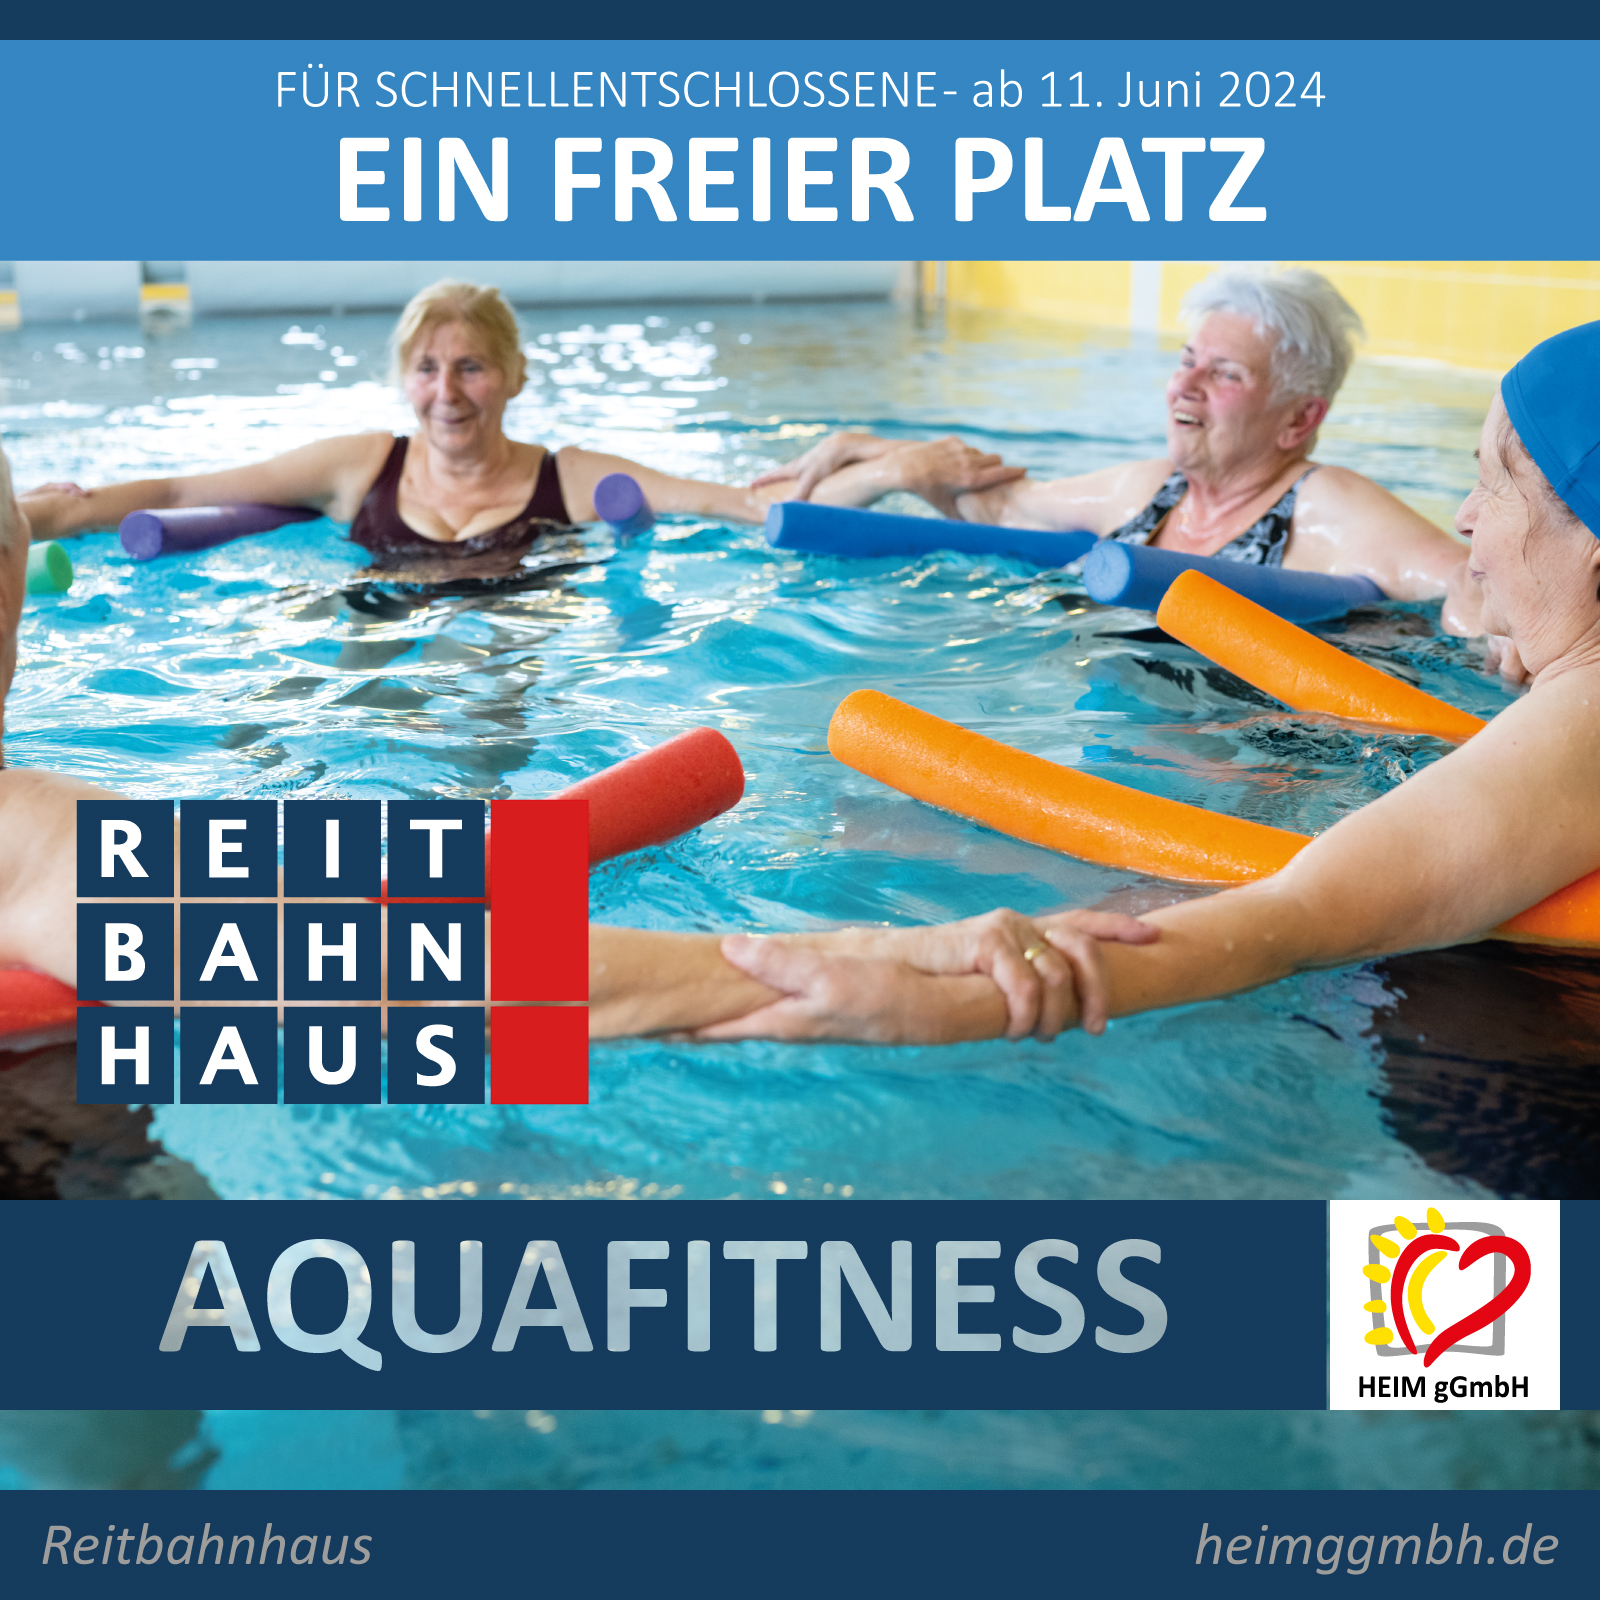 Noch ein freier Platz für unseren Aquafitness-Kurs am Dienstag im Chemnitzer Reitbahnhaus der HEIM gemeinnützigen GmbH